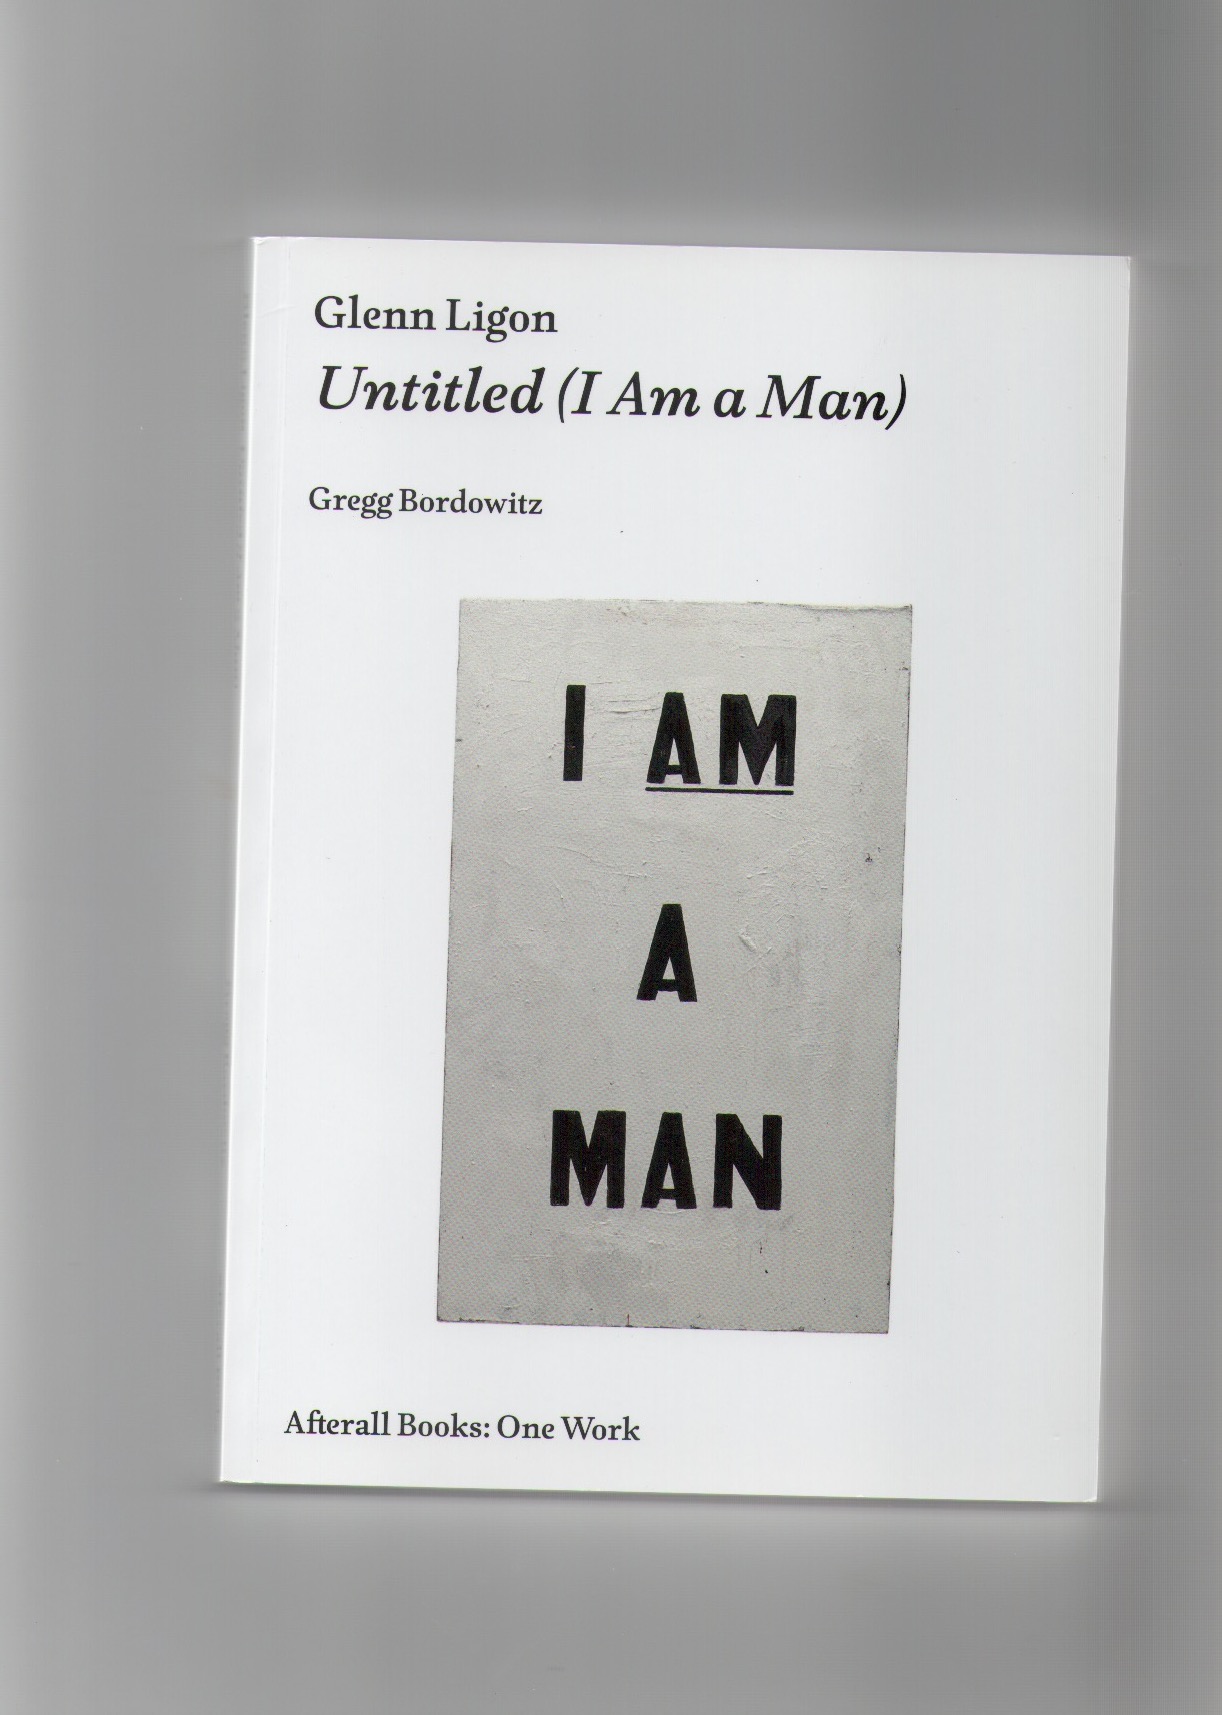 BORDOWITZ, Gregg - Glenn Ligon: Untitled (I Am a Man)